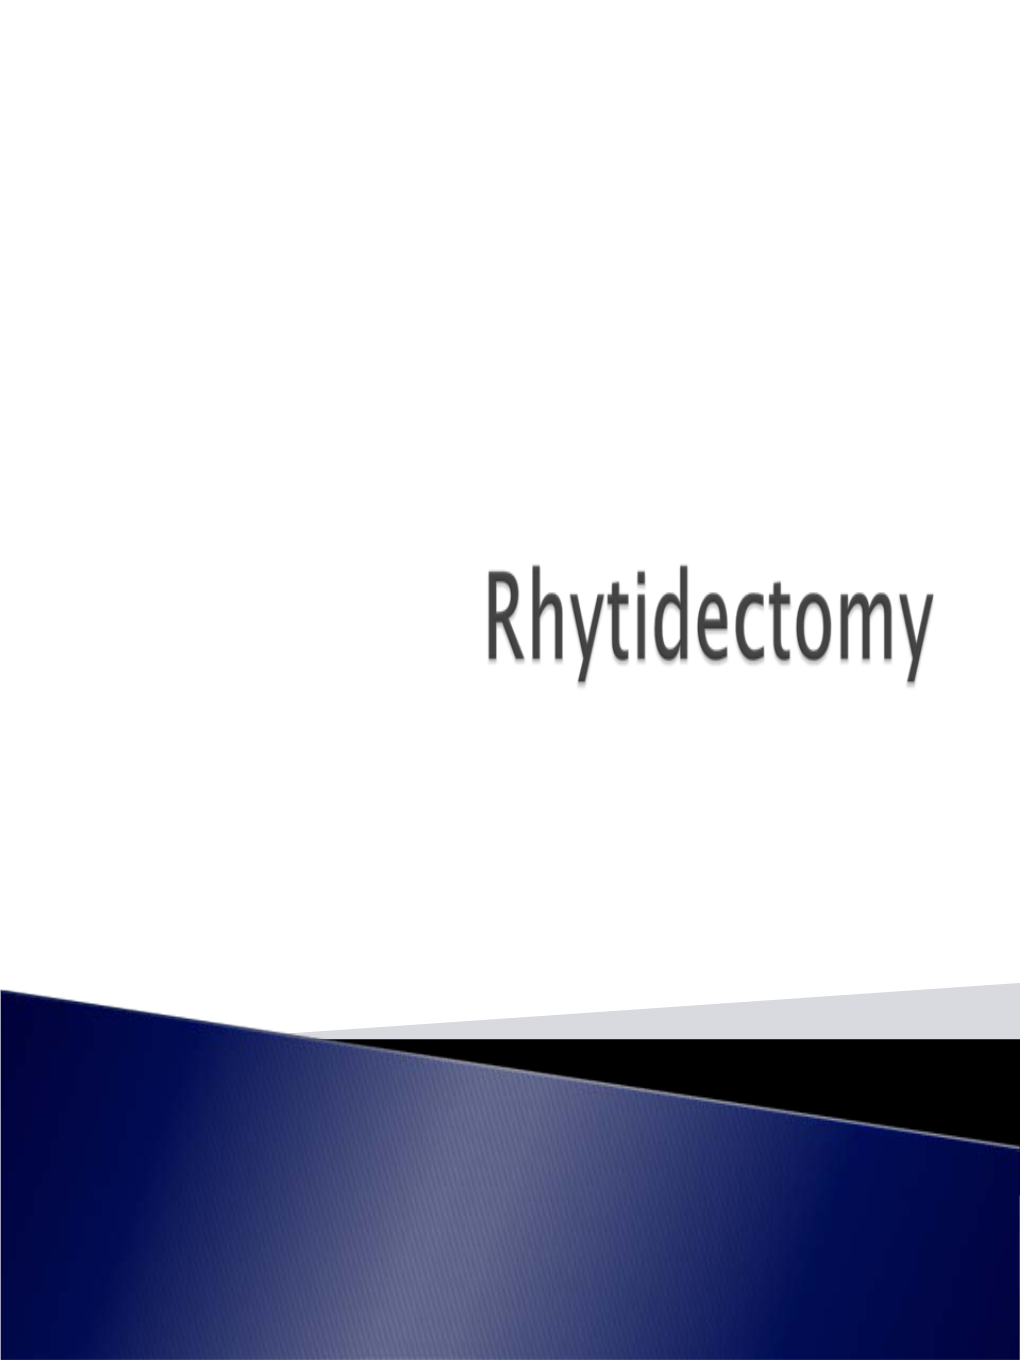 Rhytidectomy.Pdf